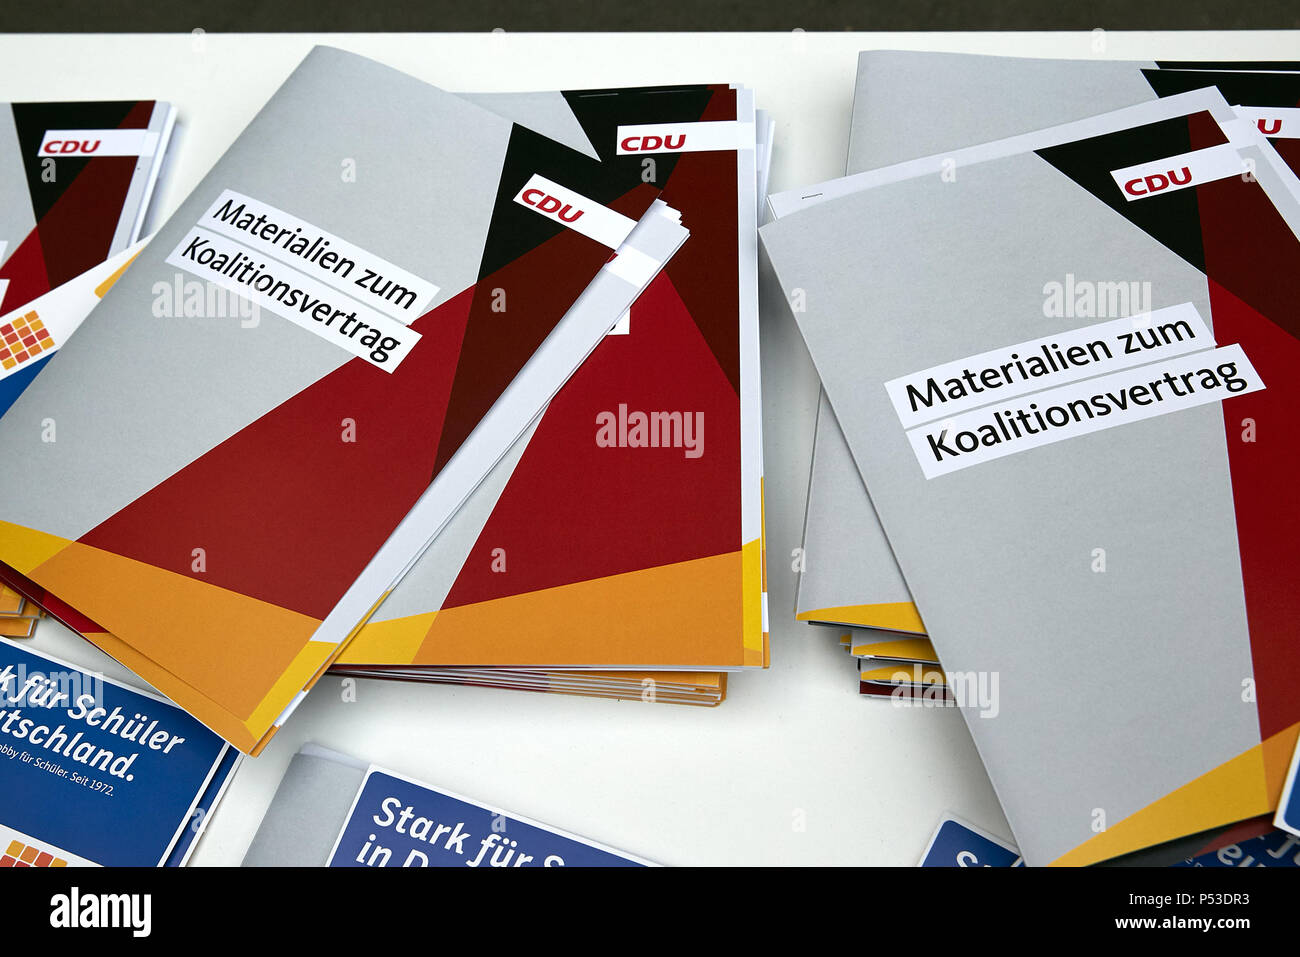 Berlin, Alemania - carpetas con documentos sobre el acuerdo de la coalición están en el congreso del partido CDU. Foto de stock